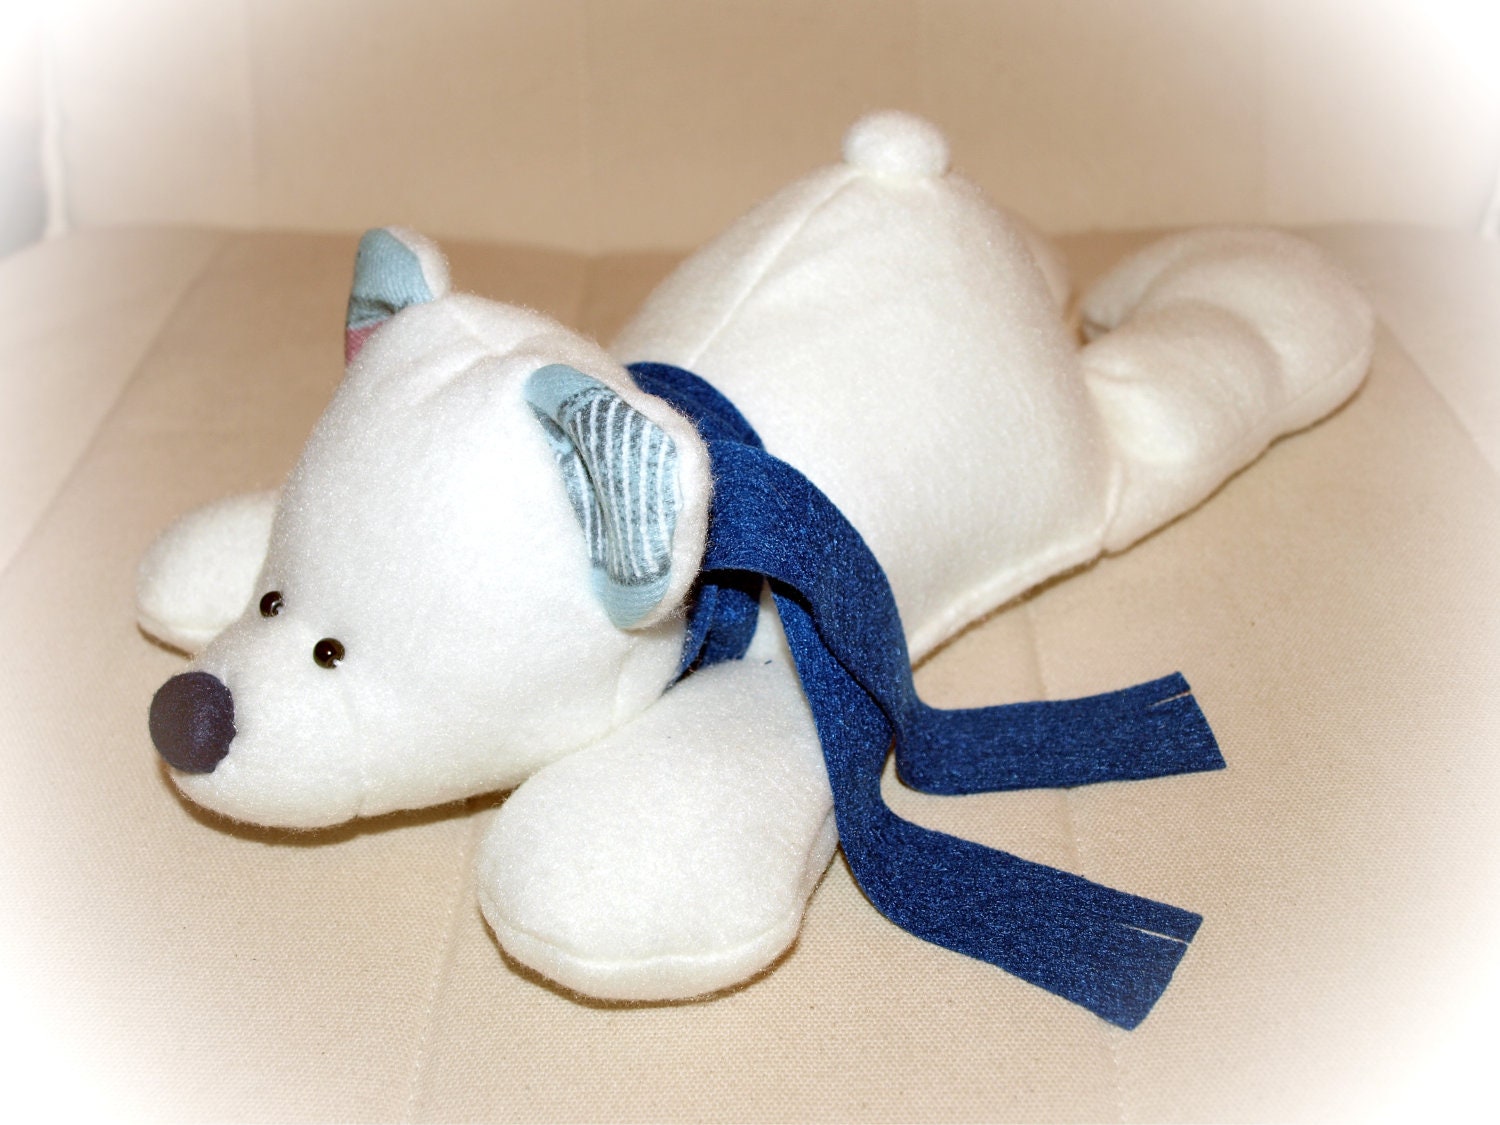 Soft stuffed polar bear,stuffed toy, christmas toy, plush bear, teddy bear toy, handmade - Fairybugcreative